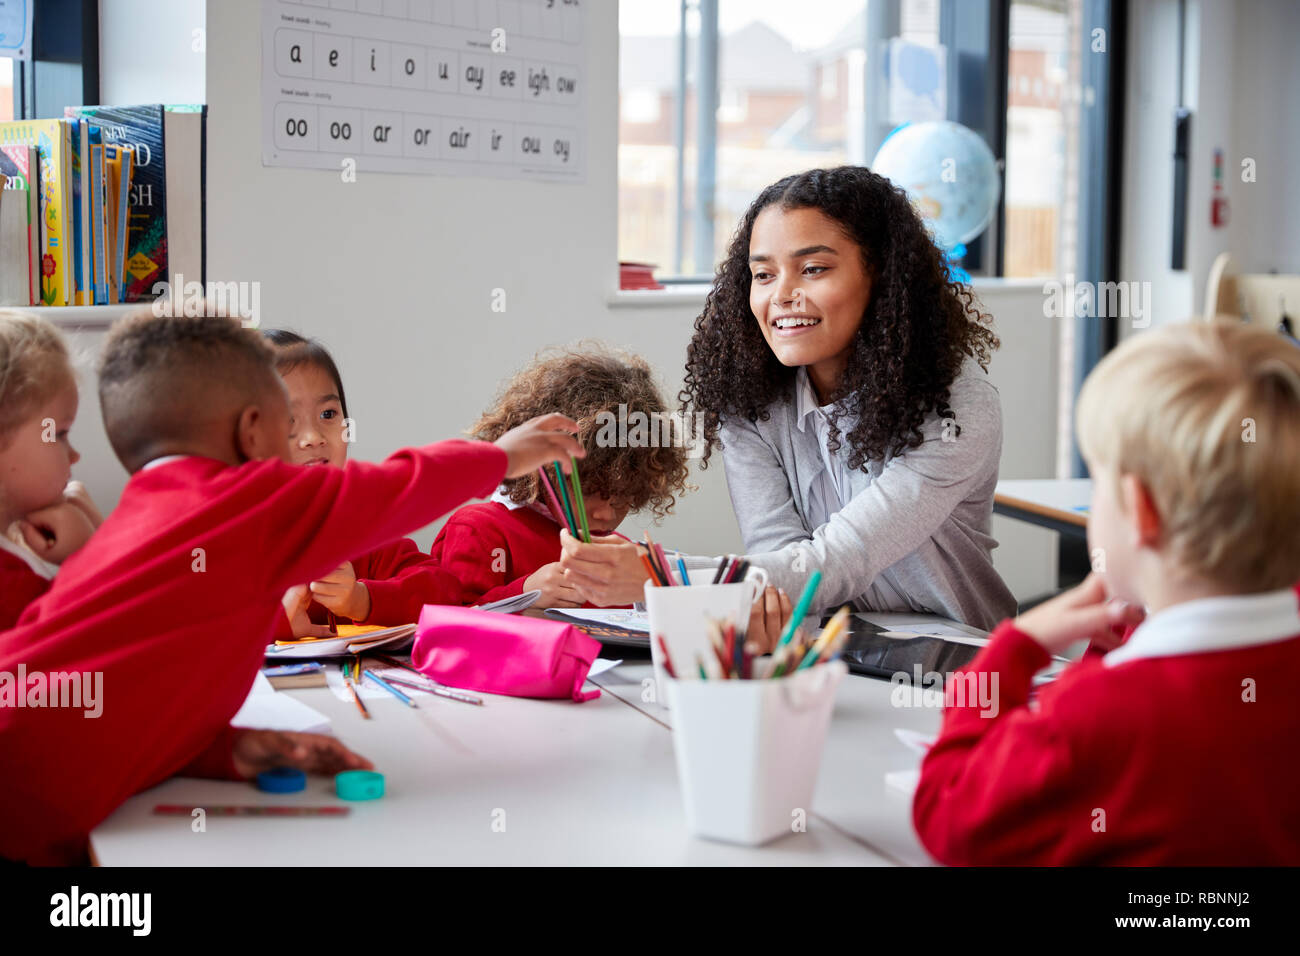 Vorderansicht des lächelnd weibliche Infant School Lehrer an einem Tisch im Klassenzimmer sitzen mit einer Gruppe von Schulkindern Stockfoto